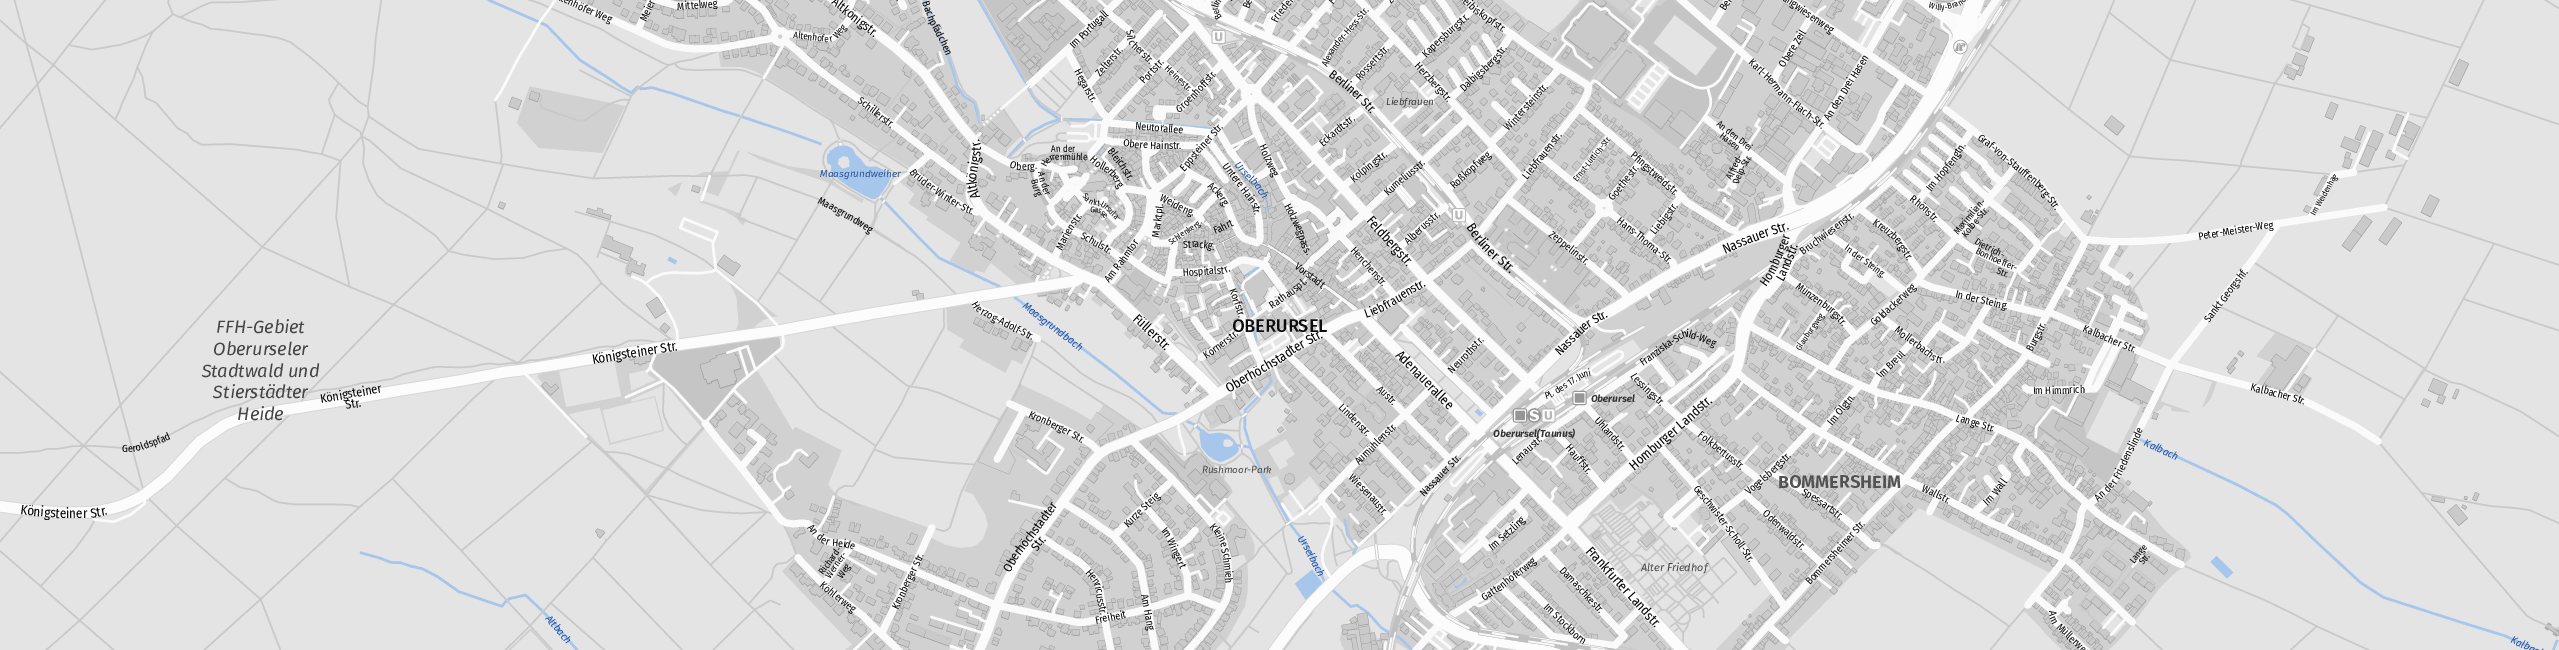 Stadtplan Oberursel (Taunus) zum Downloaden.